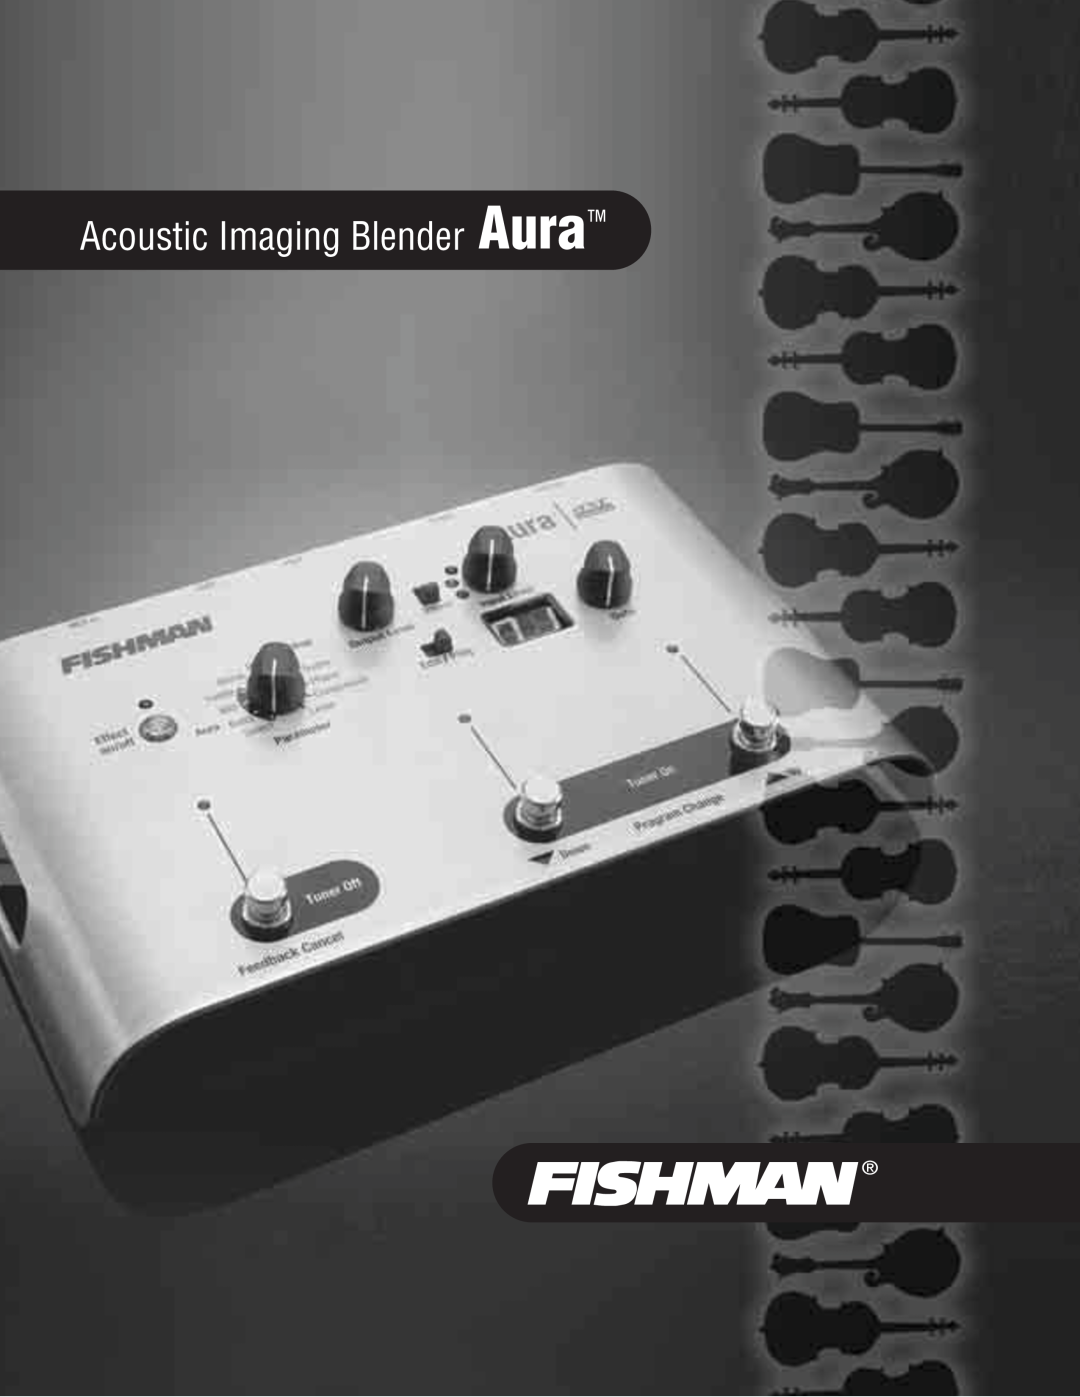 Fishman manual Acoustic Imaging Blender Aura 